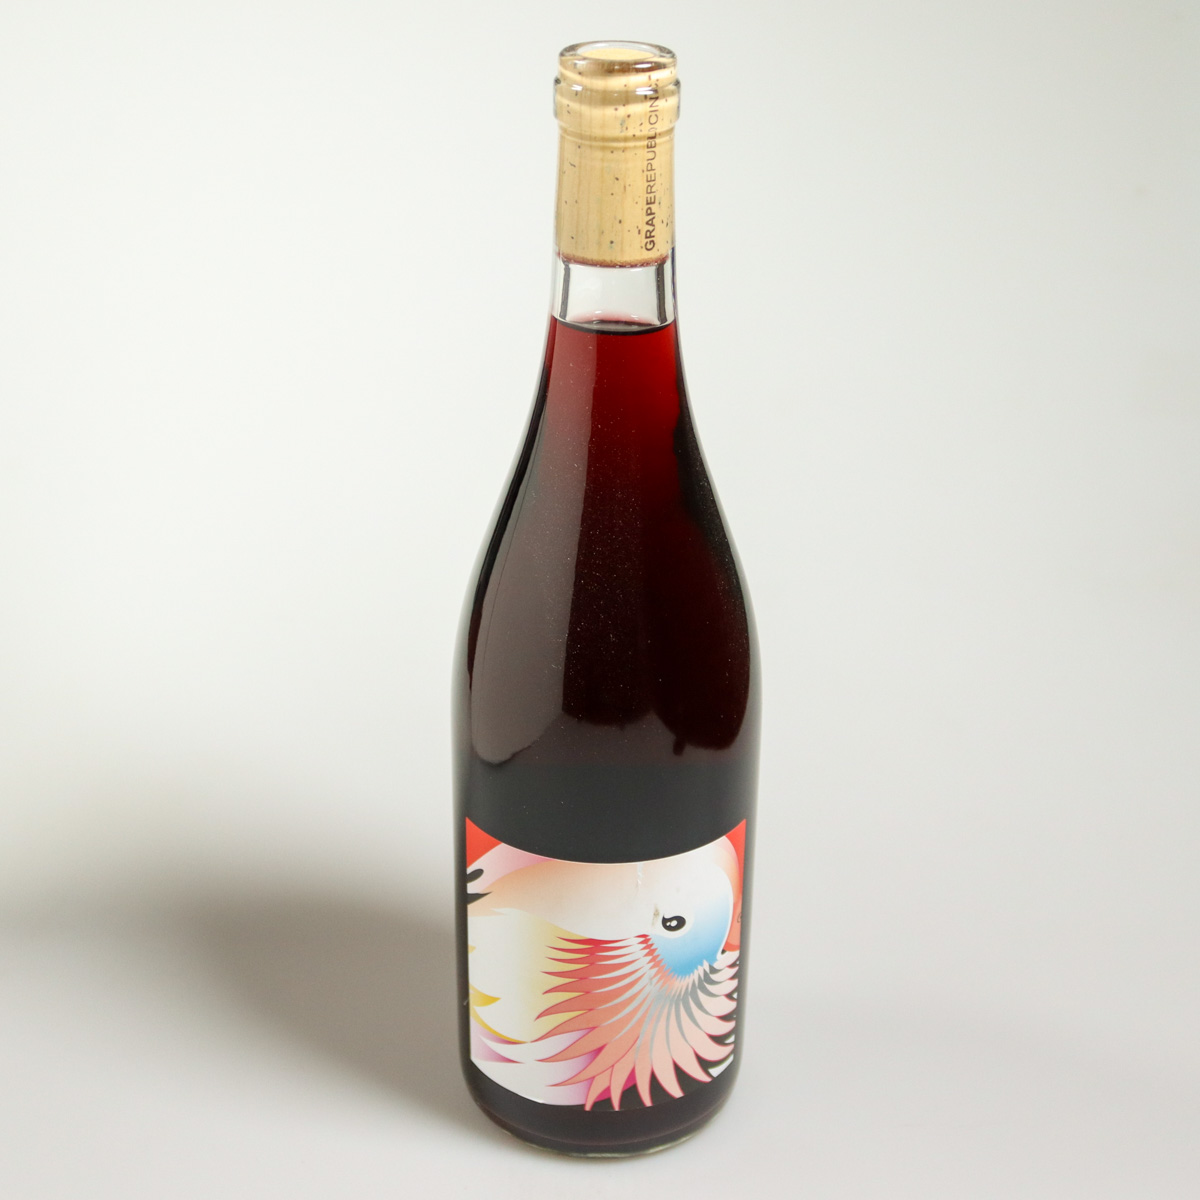 vin nature japonais rouge muscat bailey 2020 grape republic